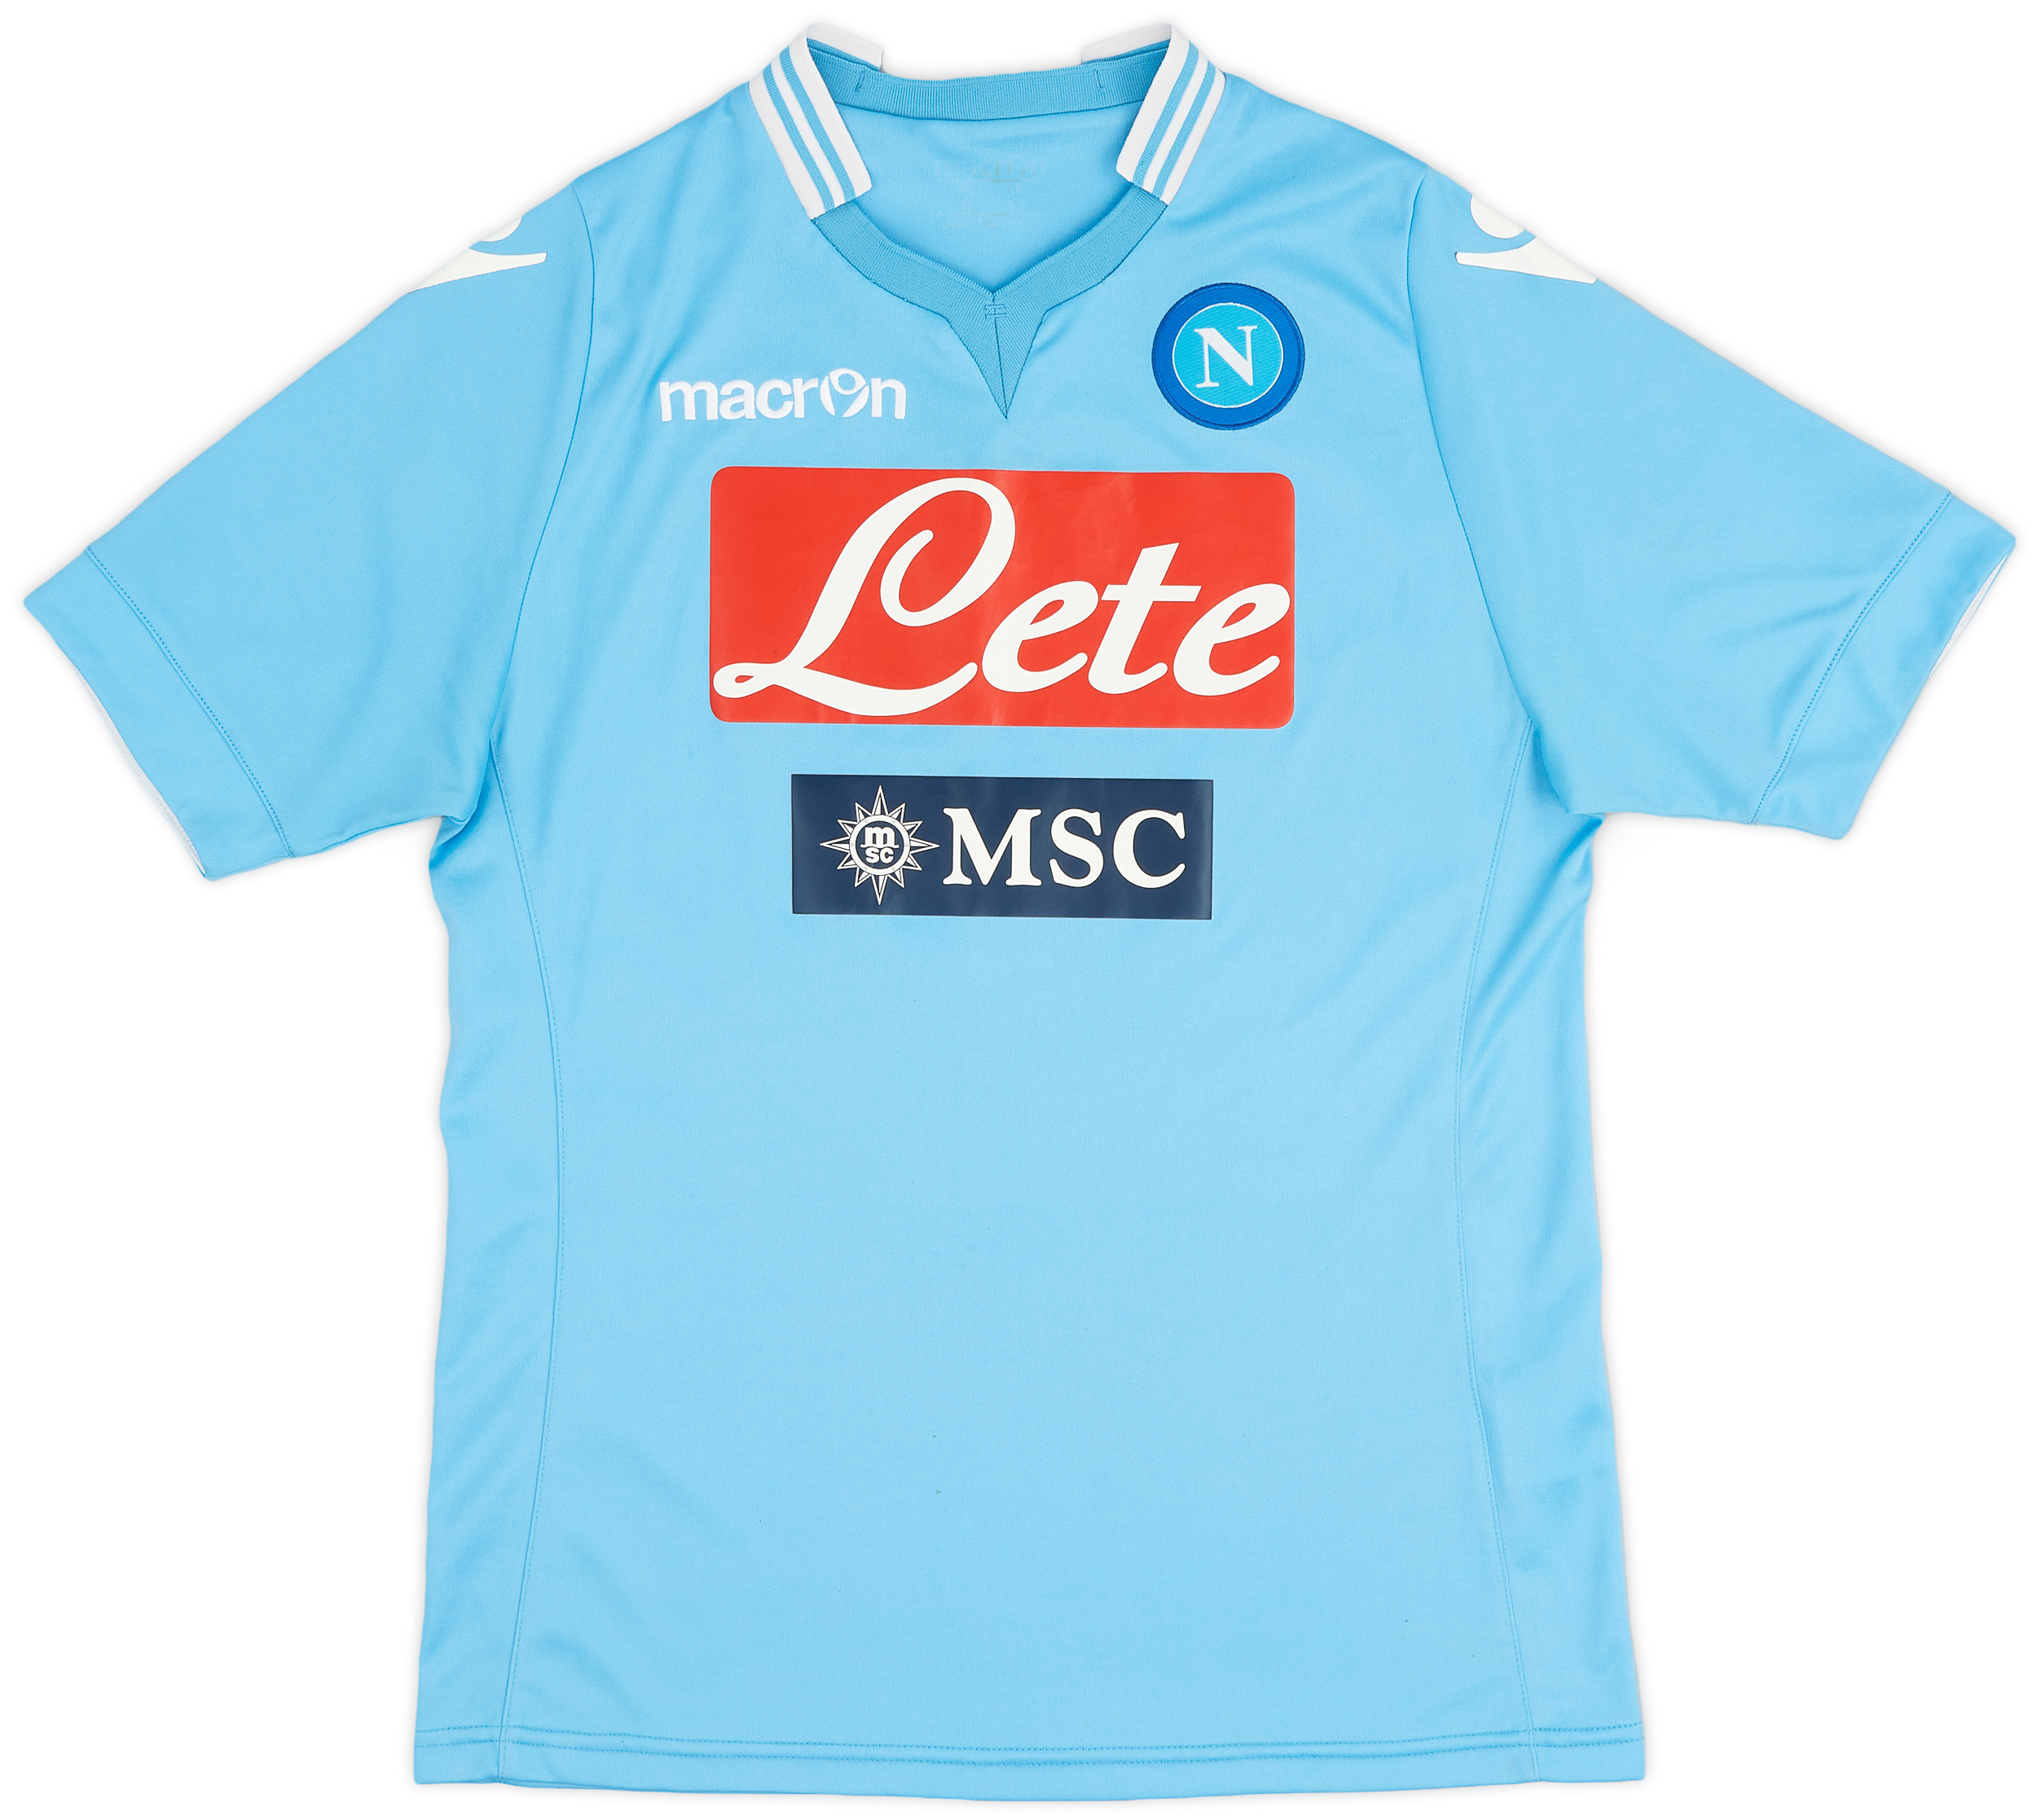 Napoli  home shirt (Original)